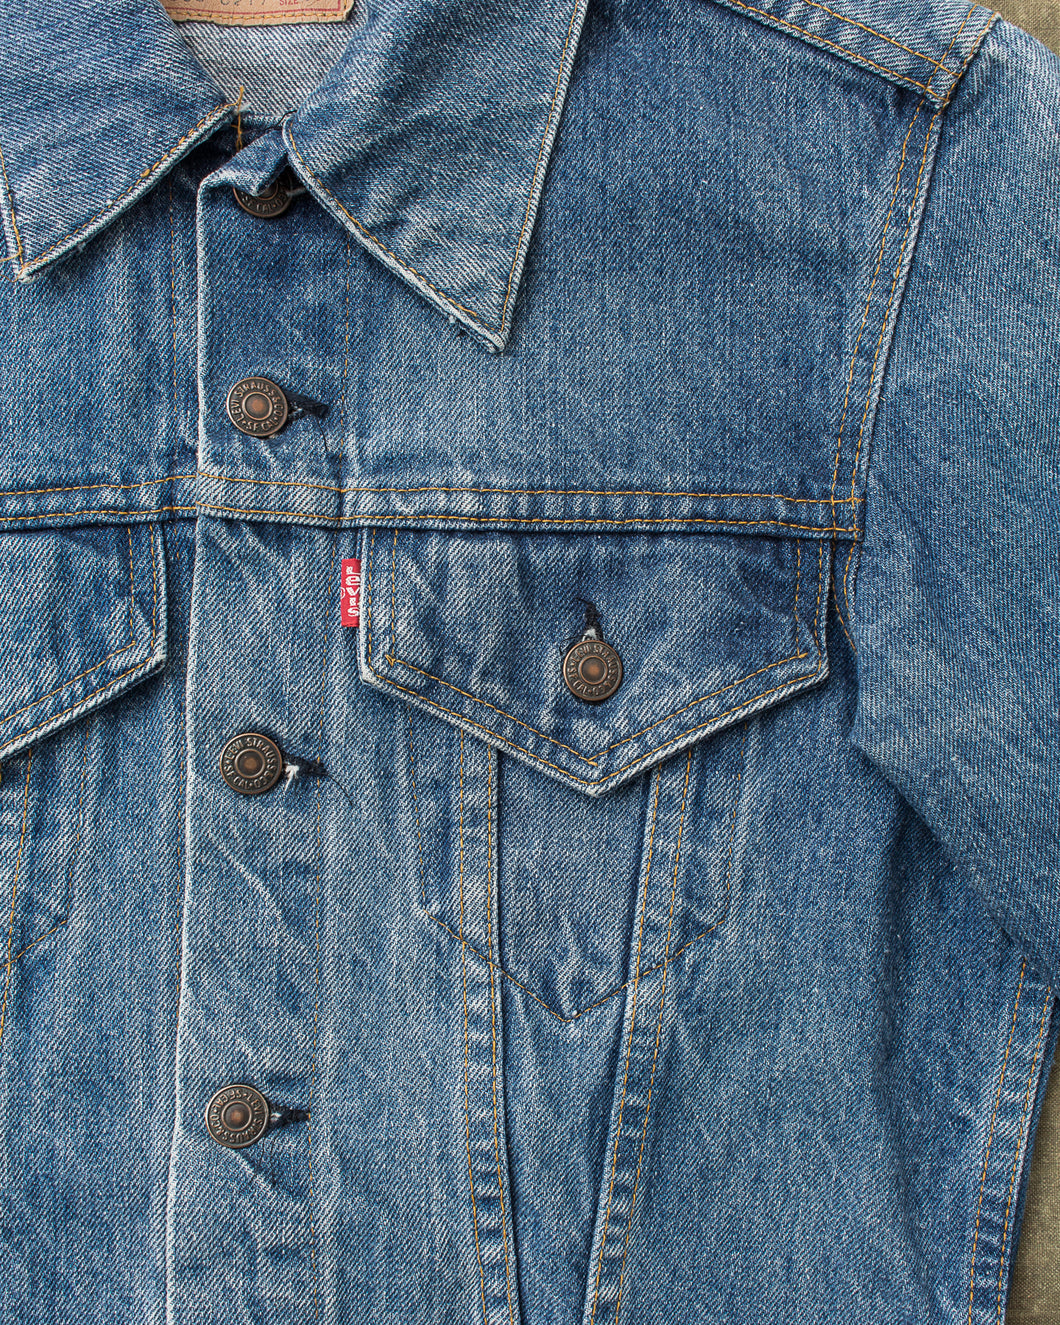 jean jacket women's small 3/4 length sleeve light wash denim Read  Description | eBay